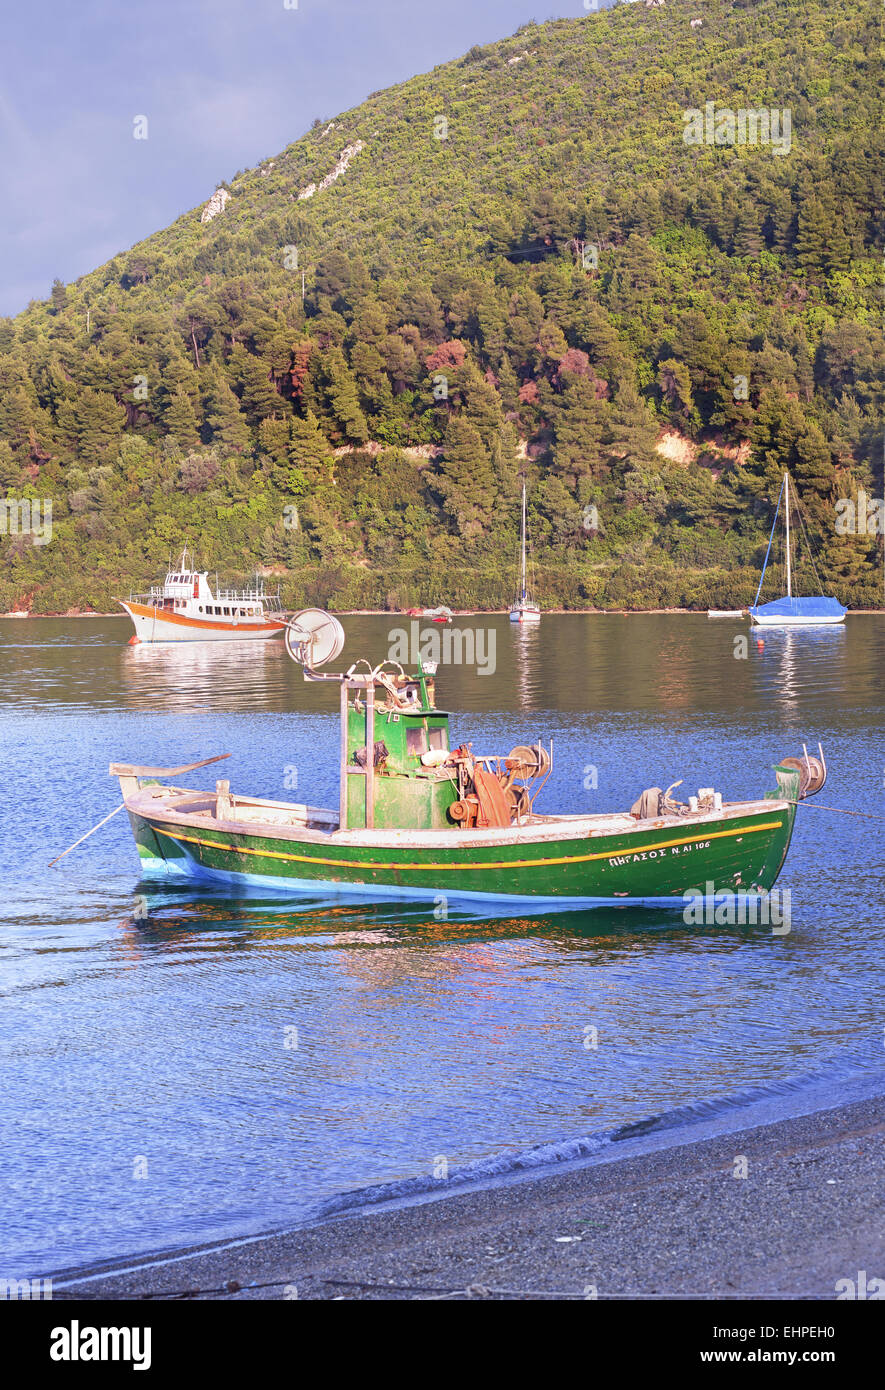 Eubea St George verdeggiante baia ancoraggio barche caicco Foto Stock